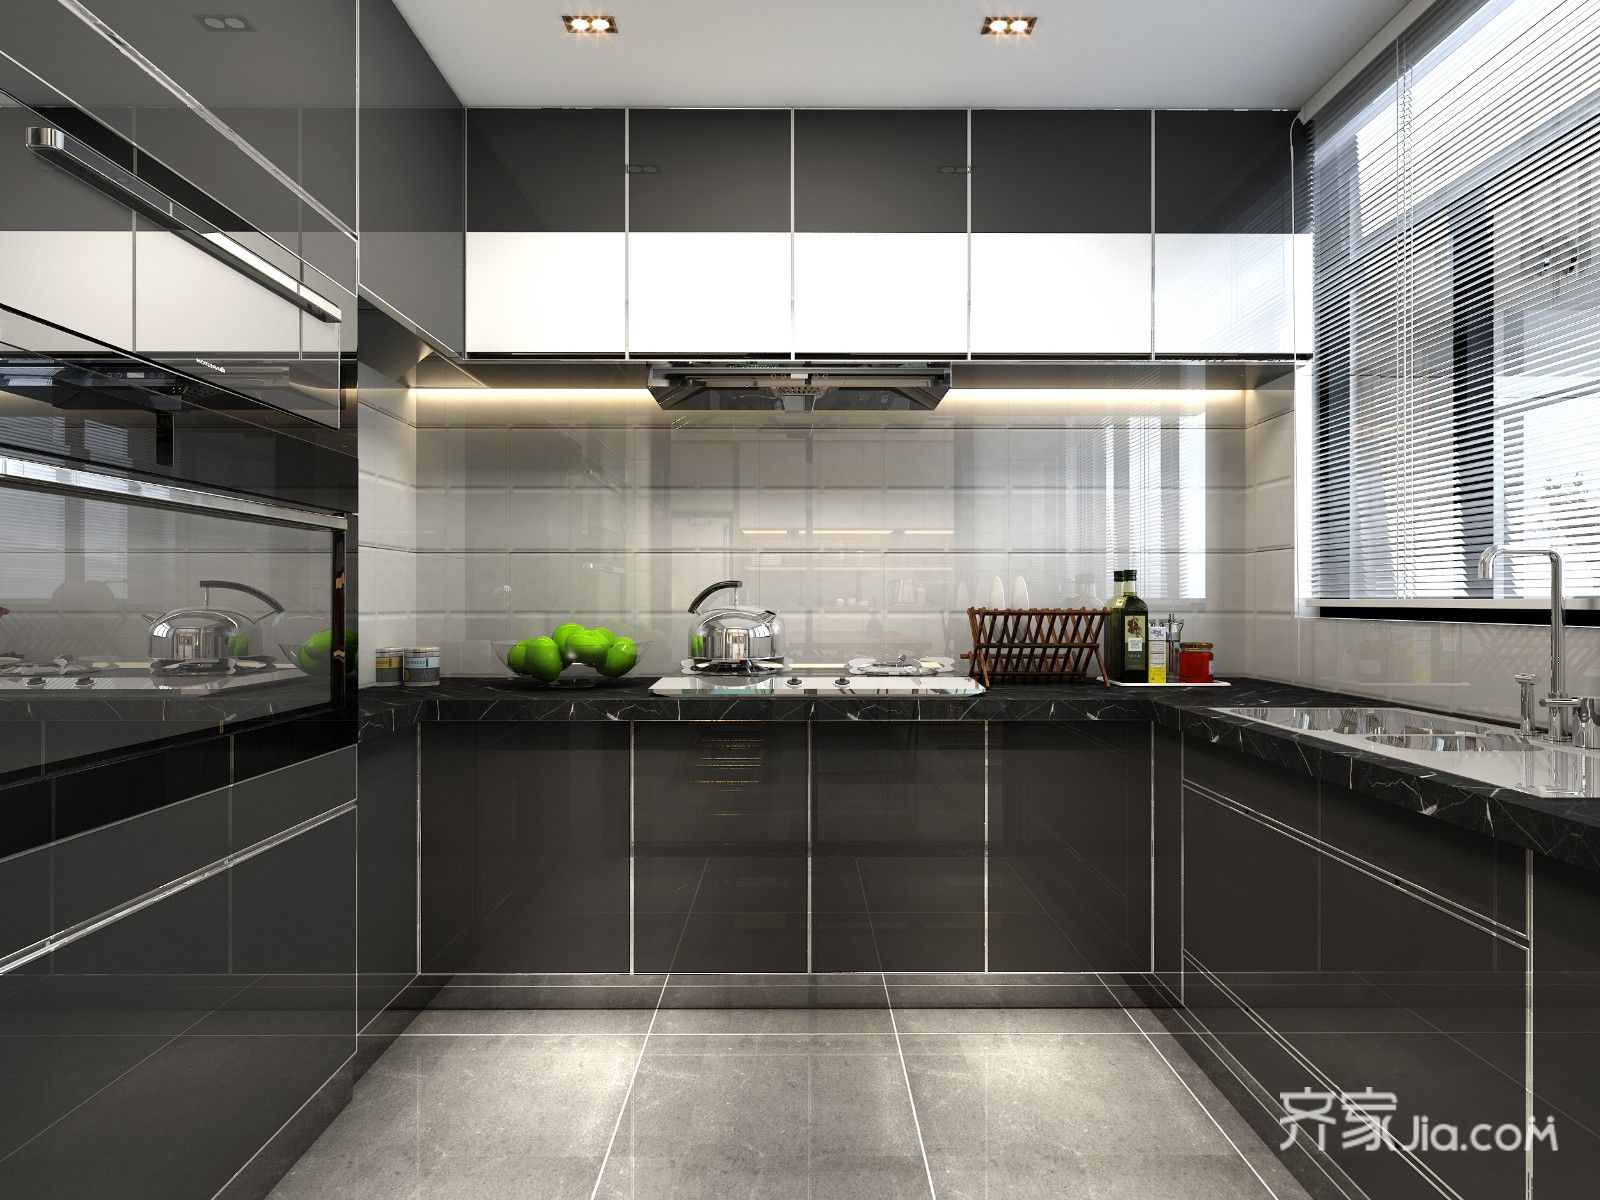 u字型橱柜,搭配黑色材质,彰显了整个厨房的霸气.